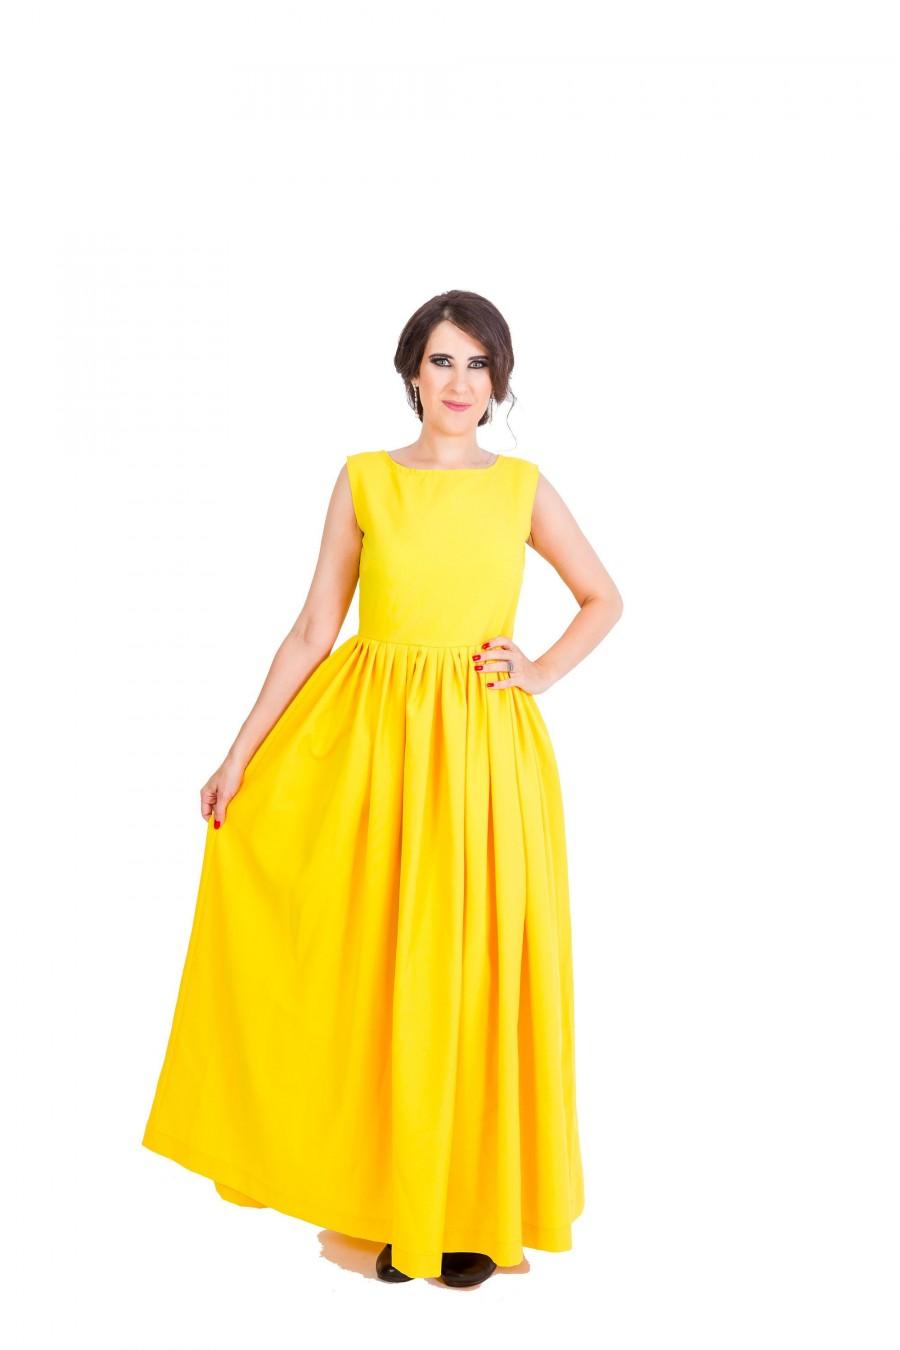 Mariage - Womens Dress, Long Dress, Maxi Dress, Yellow Dress, Round Neck Dress, Sleeveless Dress, Pleated Dress, Party Dress, Evening Dress